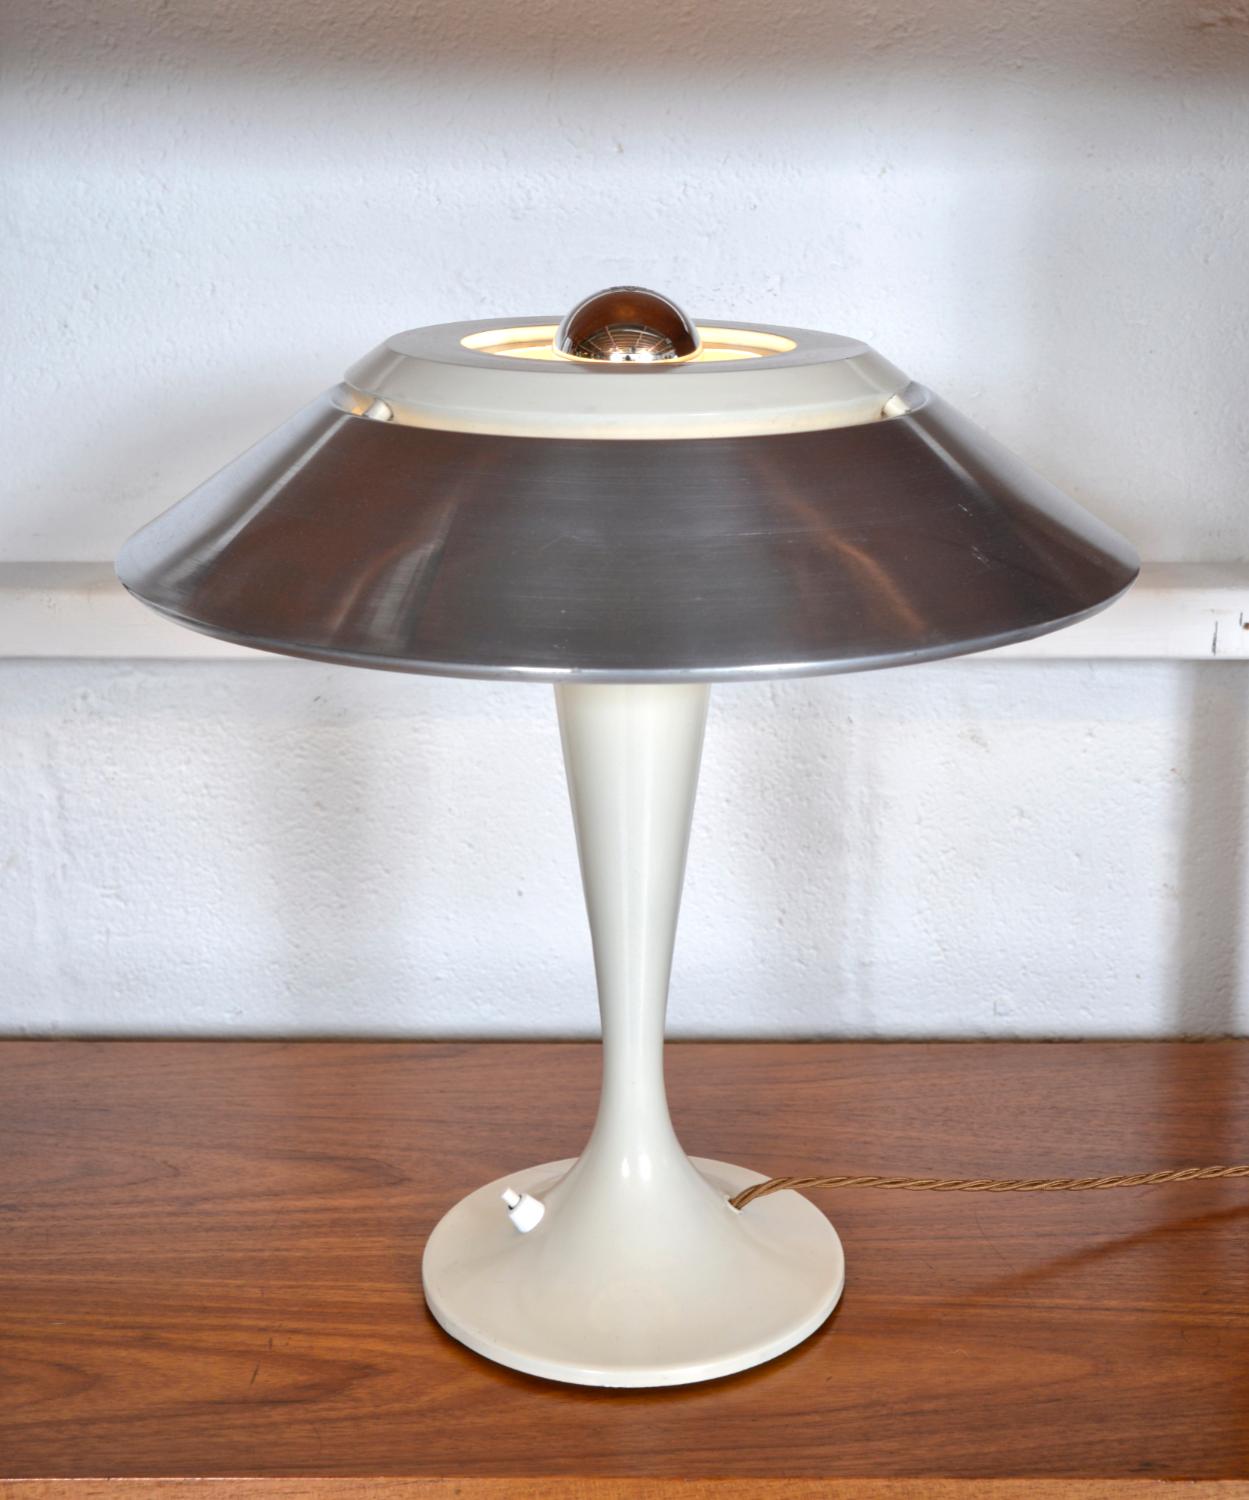 Cette magnifique lampe de table française des années 1960 par Arlus a un look très élégant de l'âge de l'espace. Sa tige conique élancée est élégamment courbée et descend jusqu'à une base métallique à pied plat, de couleur blanche, tout comme le